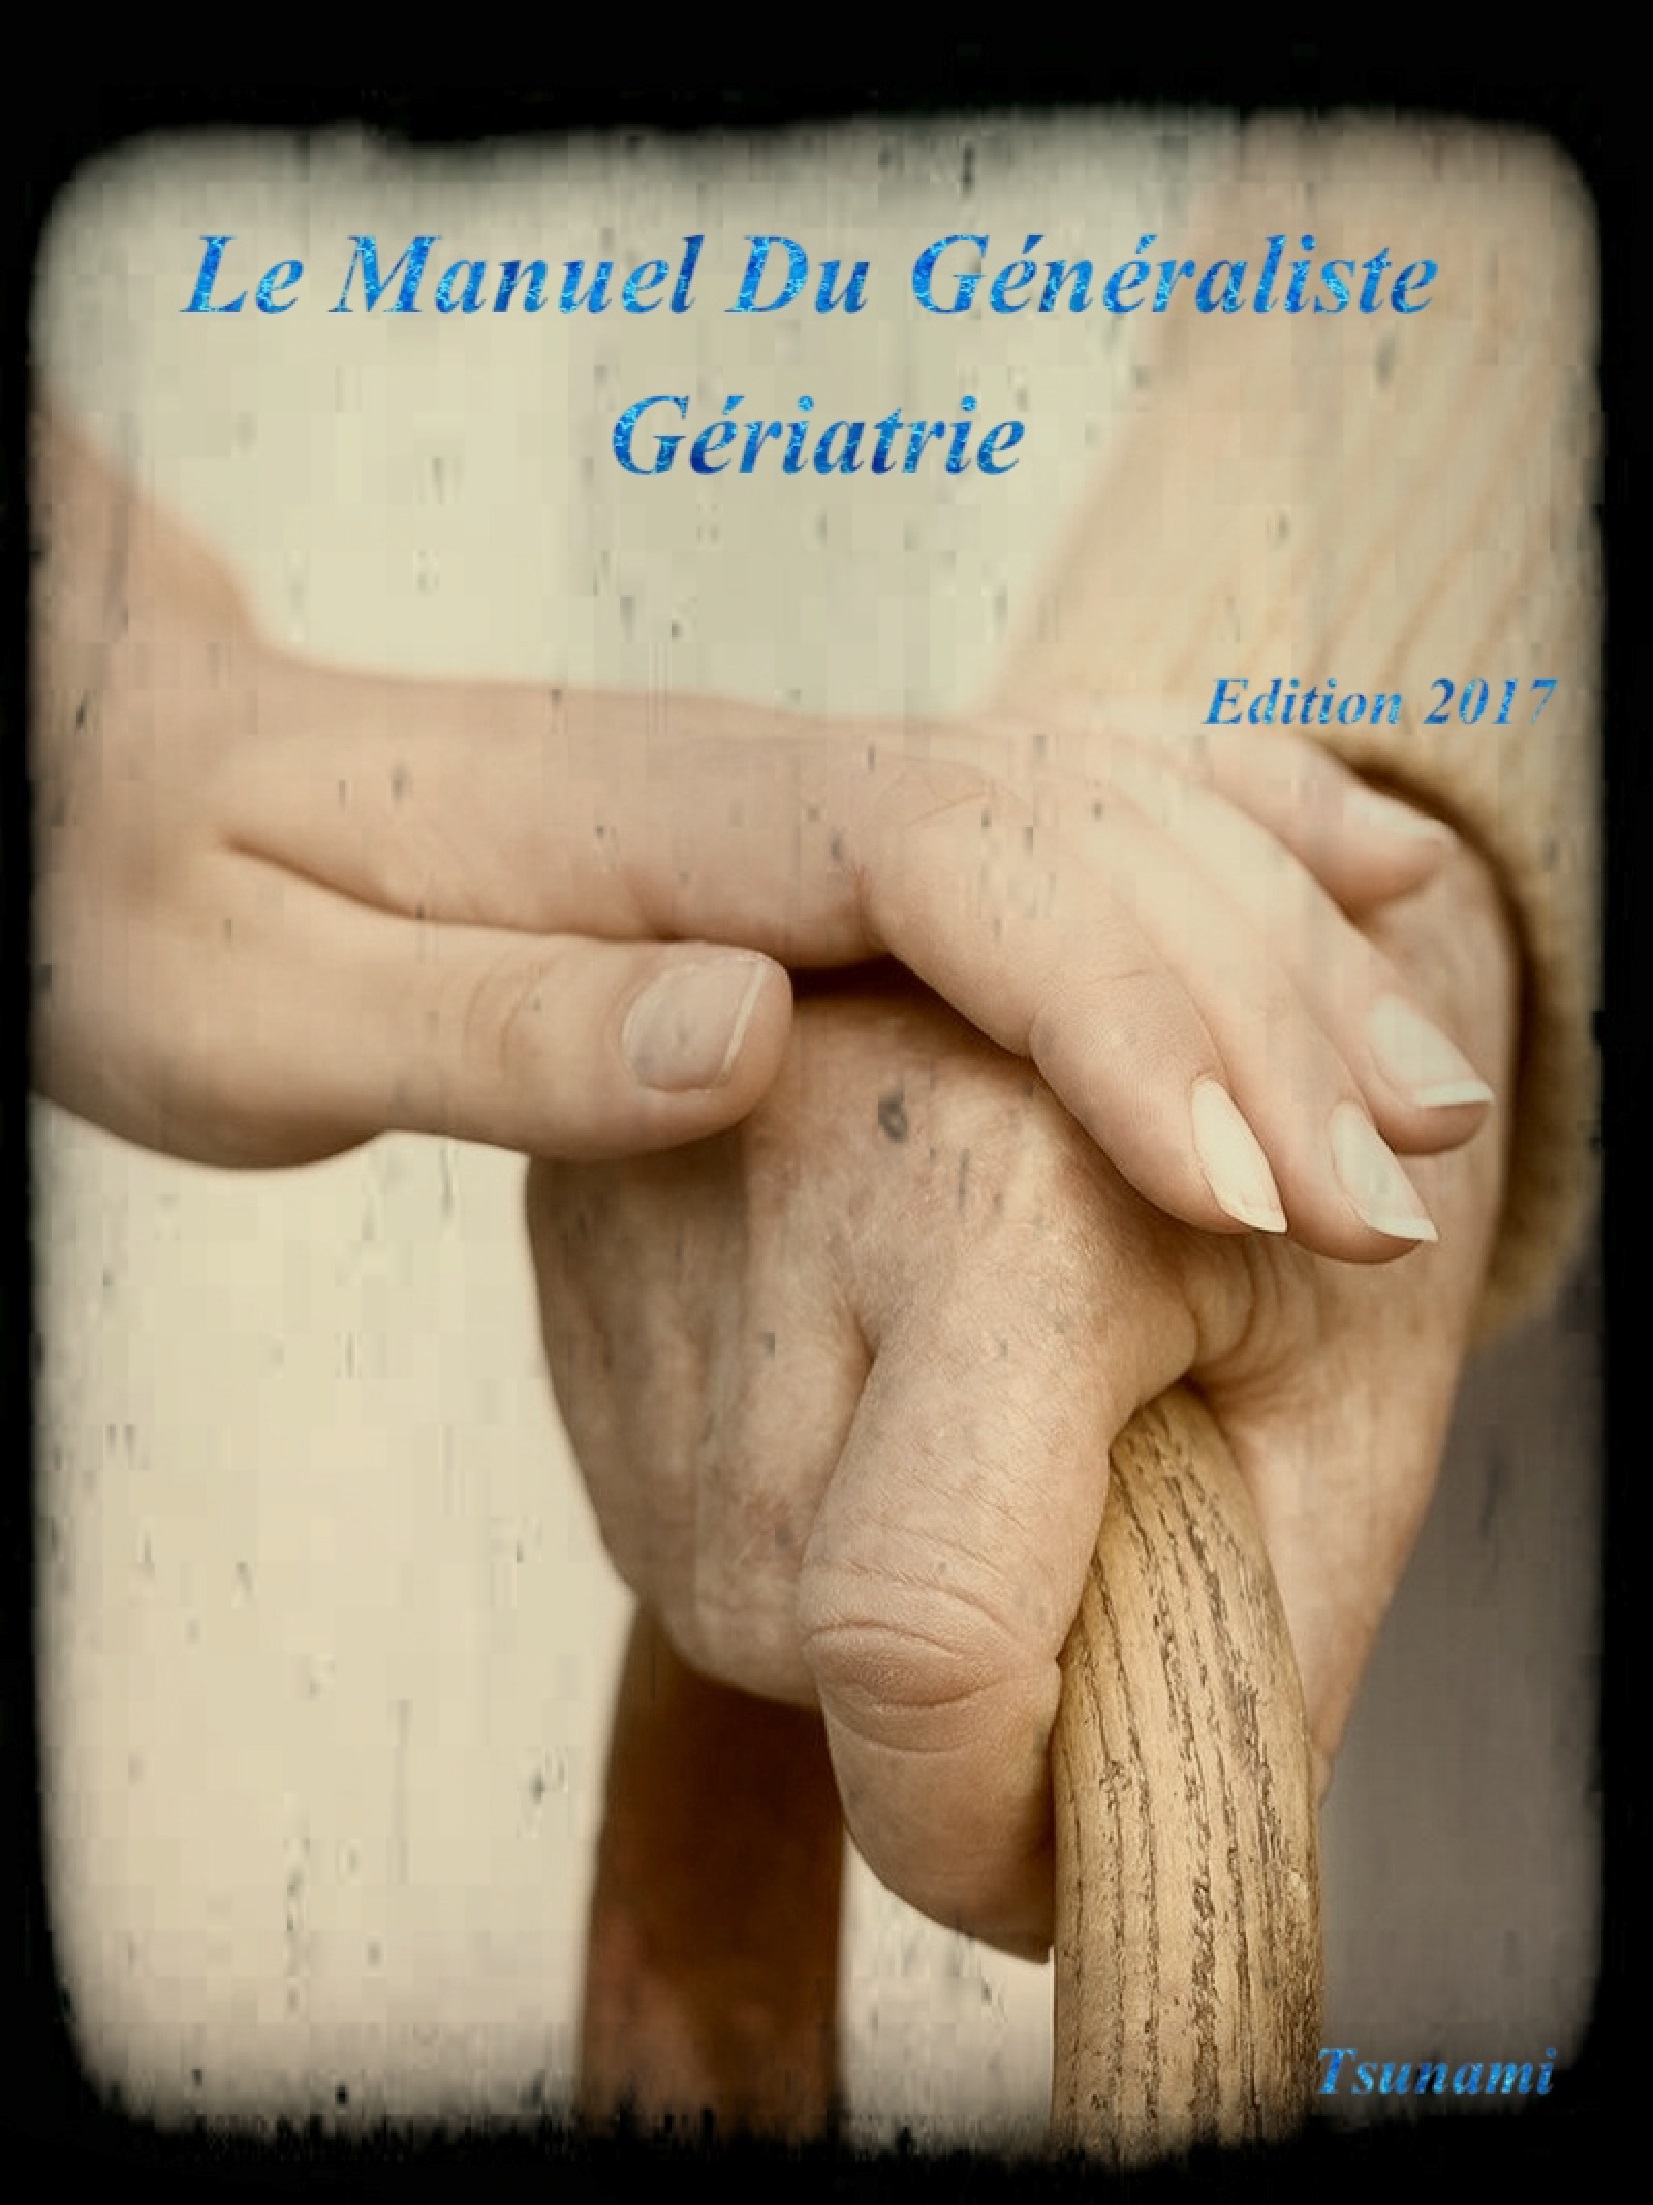 Livres Médicales - Le Manuel Du Généraliste 2017 Gériatrie - Page 5 Le_man16